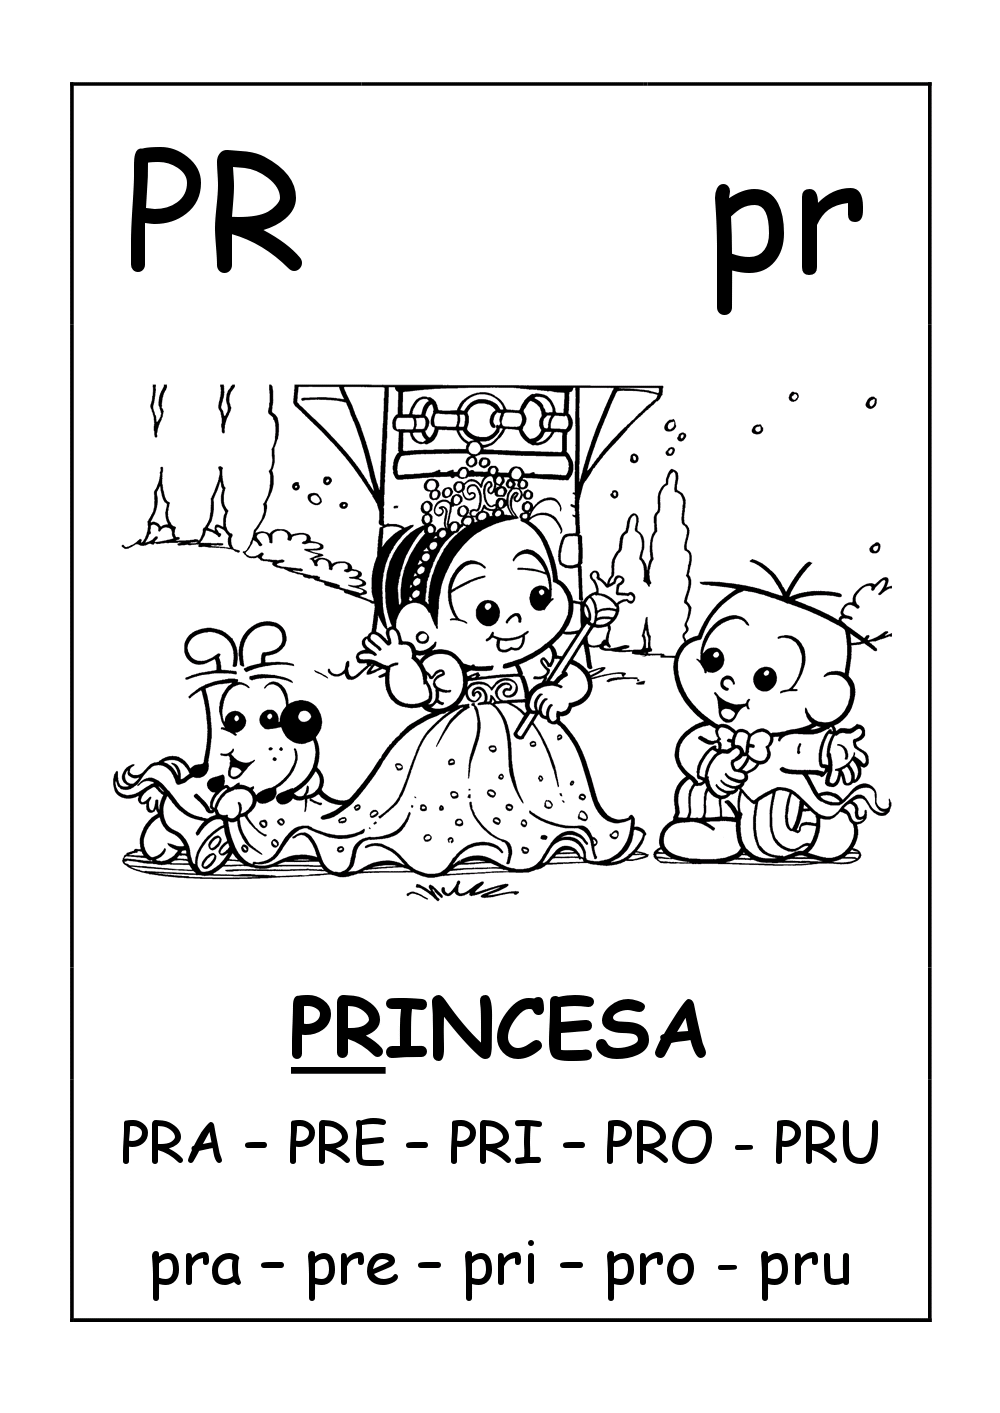 Fichas de Leitura ilustrada da Turma da Mônica